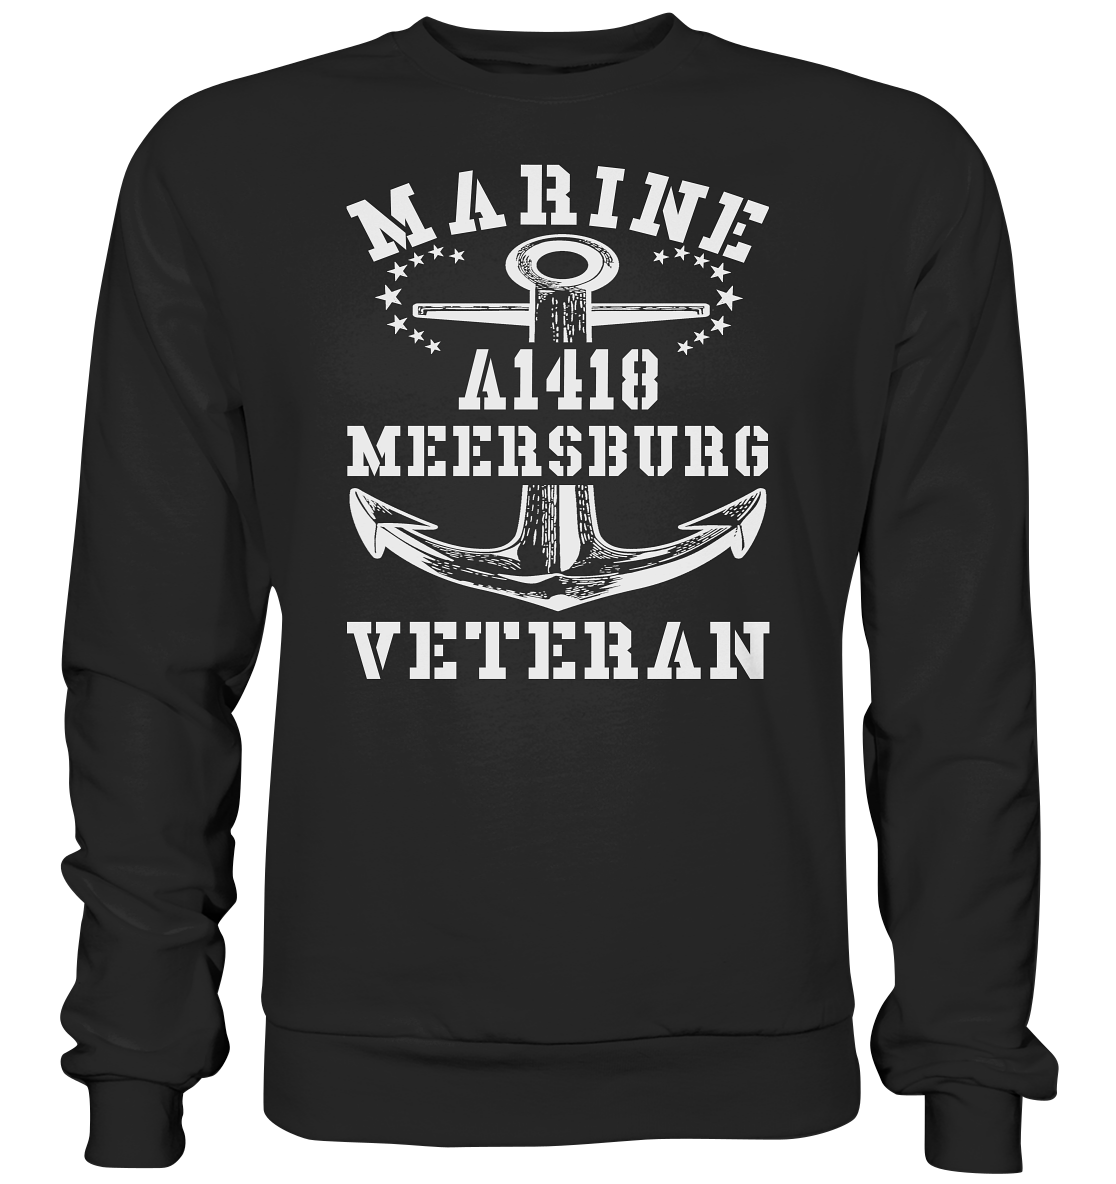 Troßschiff A1418 MEERSBURG Marine Veteran - Premium Sweatshirt